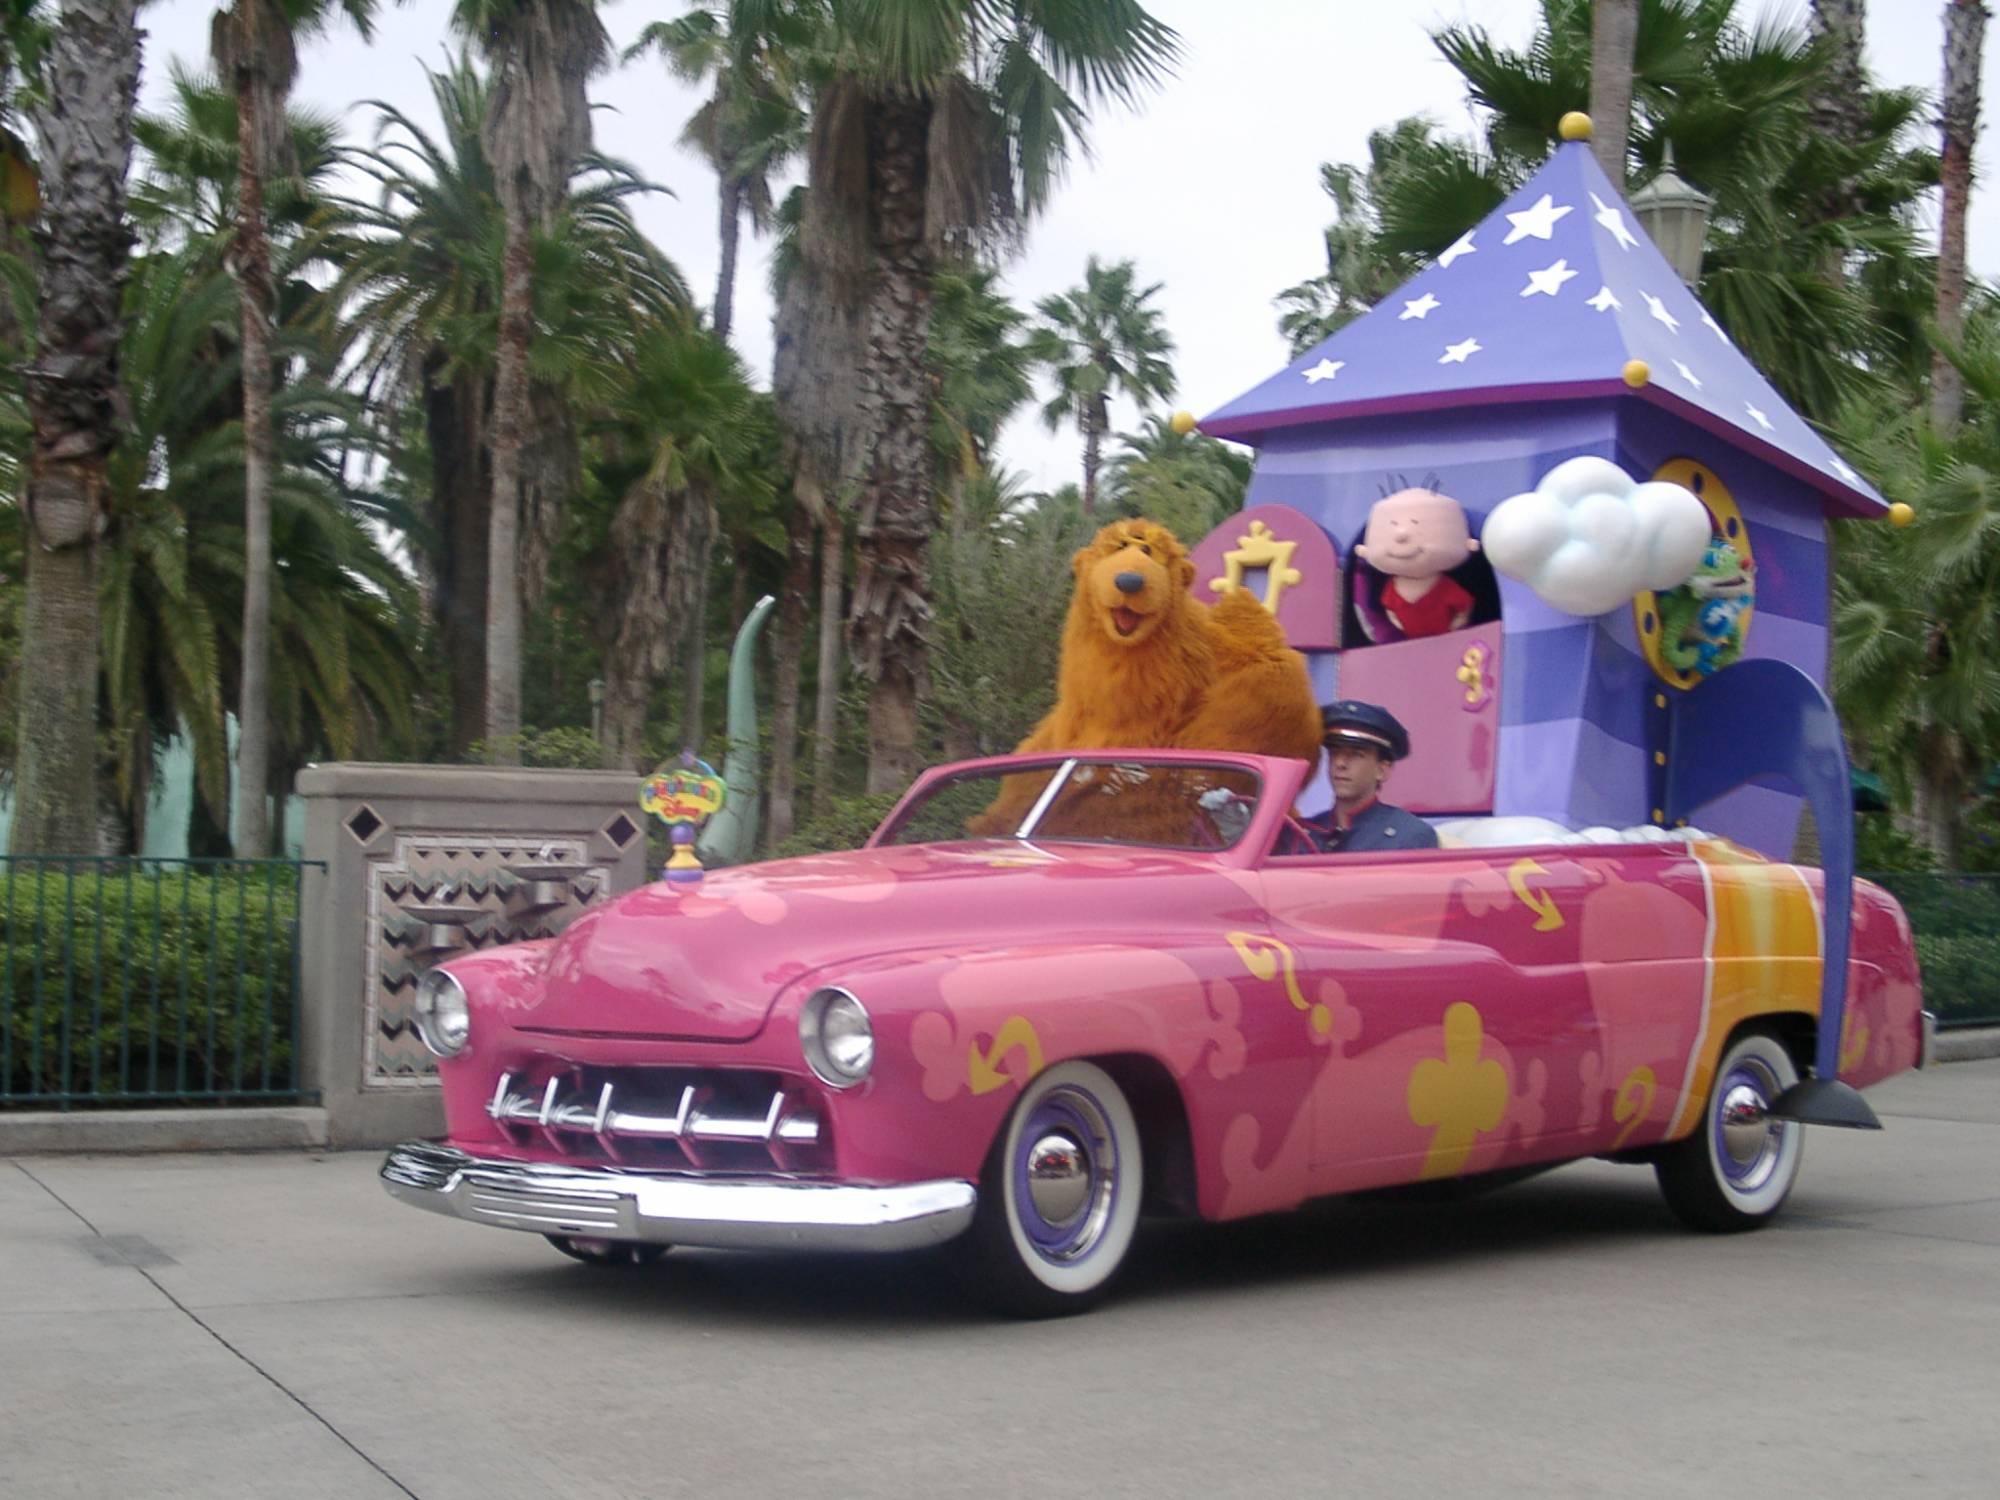 Look Back at Disney Stars and Motor Cars Parade